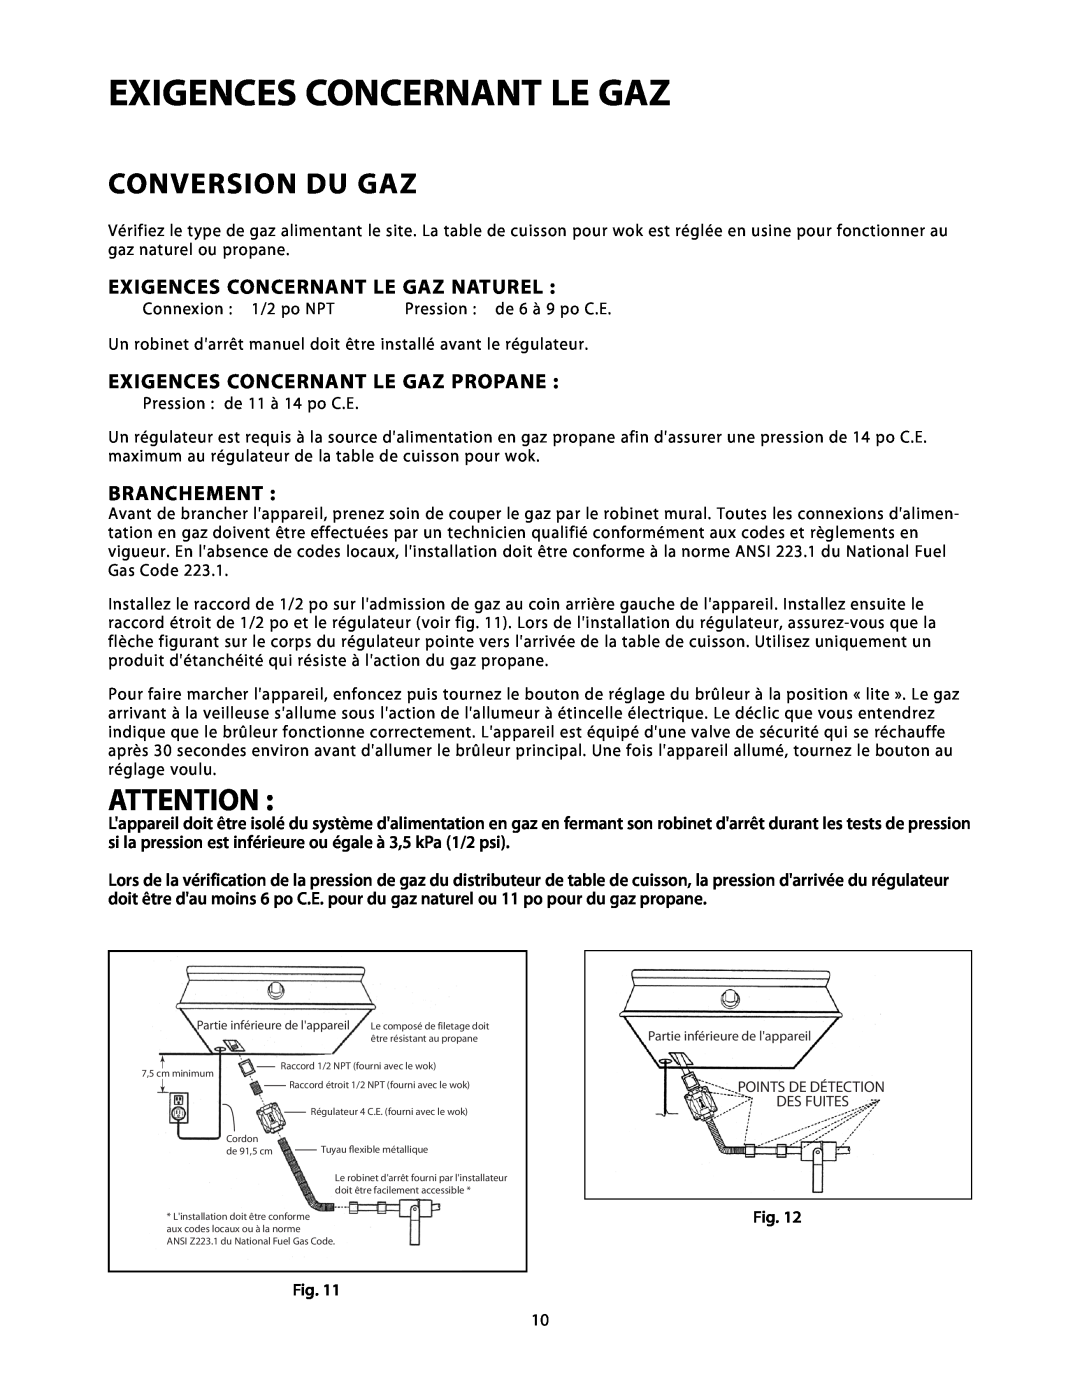 DCS C-24 Conversion Du Gaz, Exigences Concernant Le Gaz Naturel, Exigences Concernant Le Gaz Propane, Branchement 